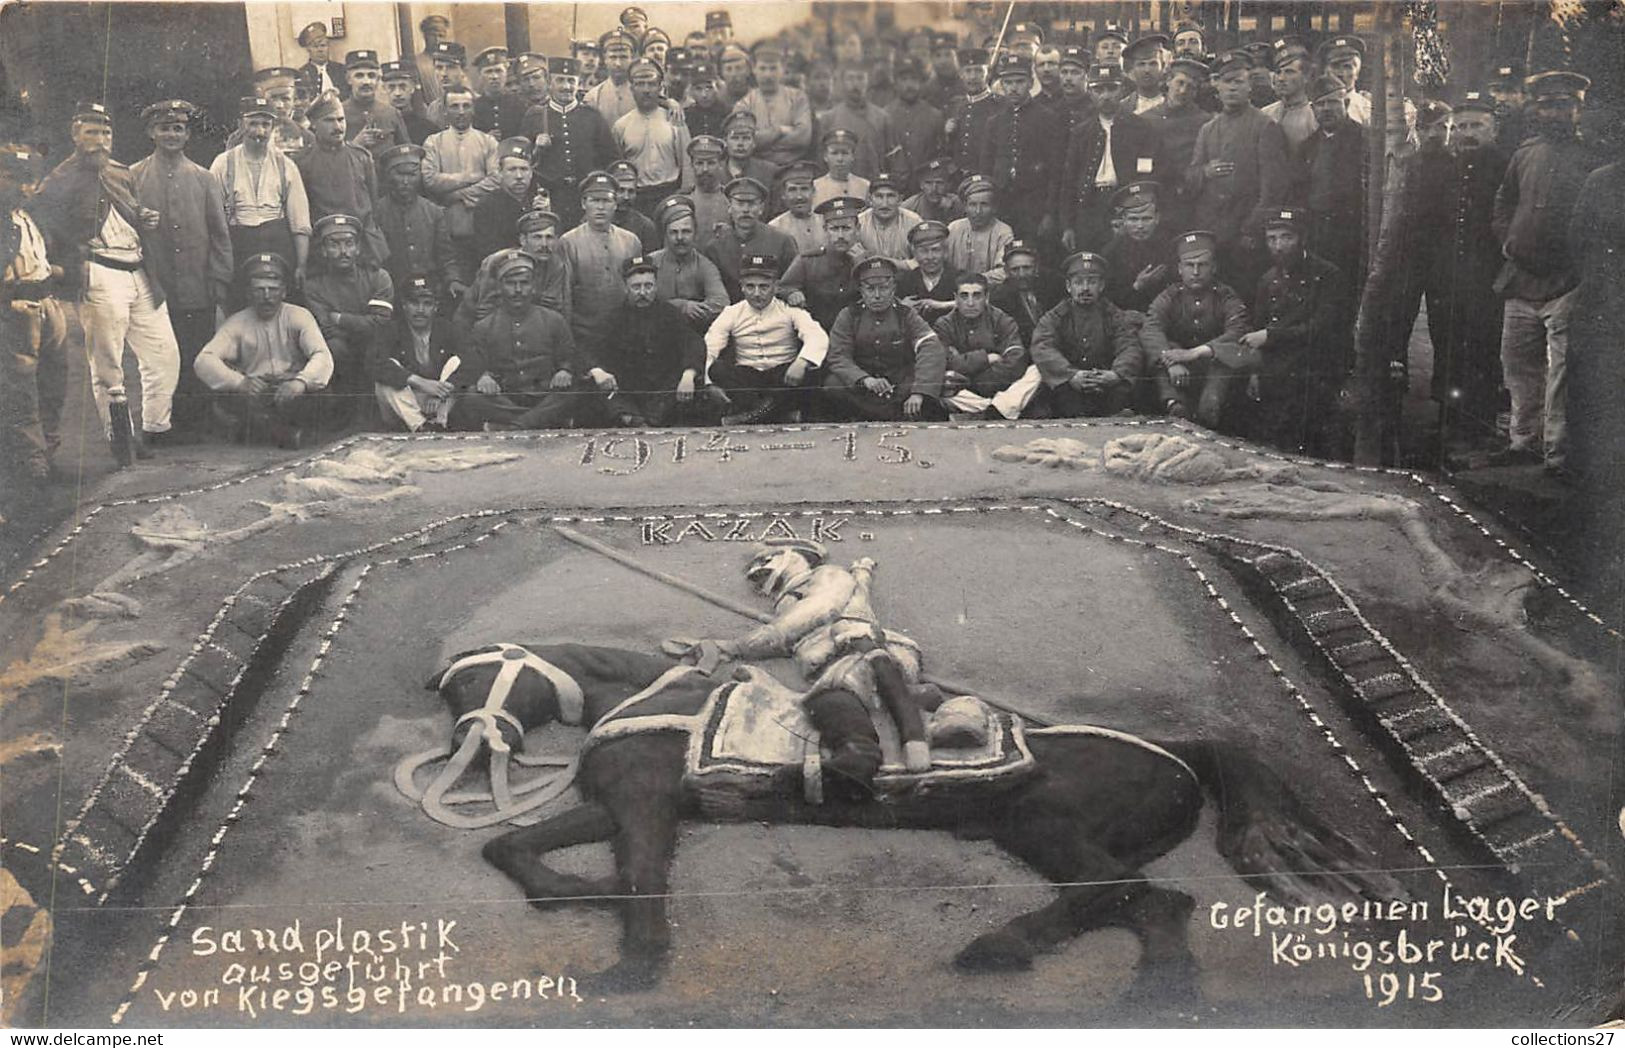 KÖNIGSBRÜCK-CARTE-PHOTO- 1915 GEFANGENEN LAGER - Camp De Prisonniers- SAND PLASTIK AUSGETÛHRT VON KIEGSGETANGENEN - Königsbrück